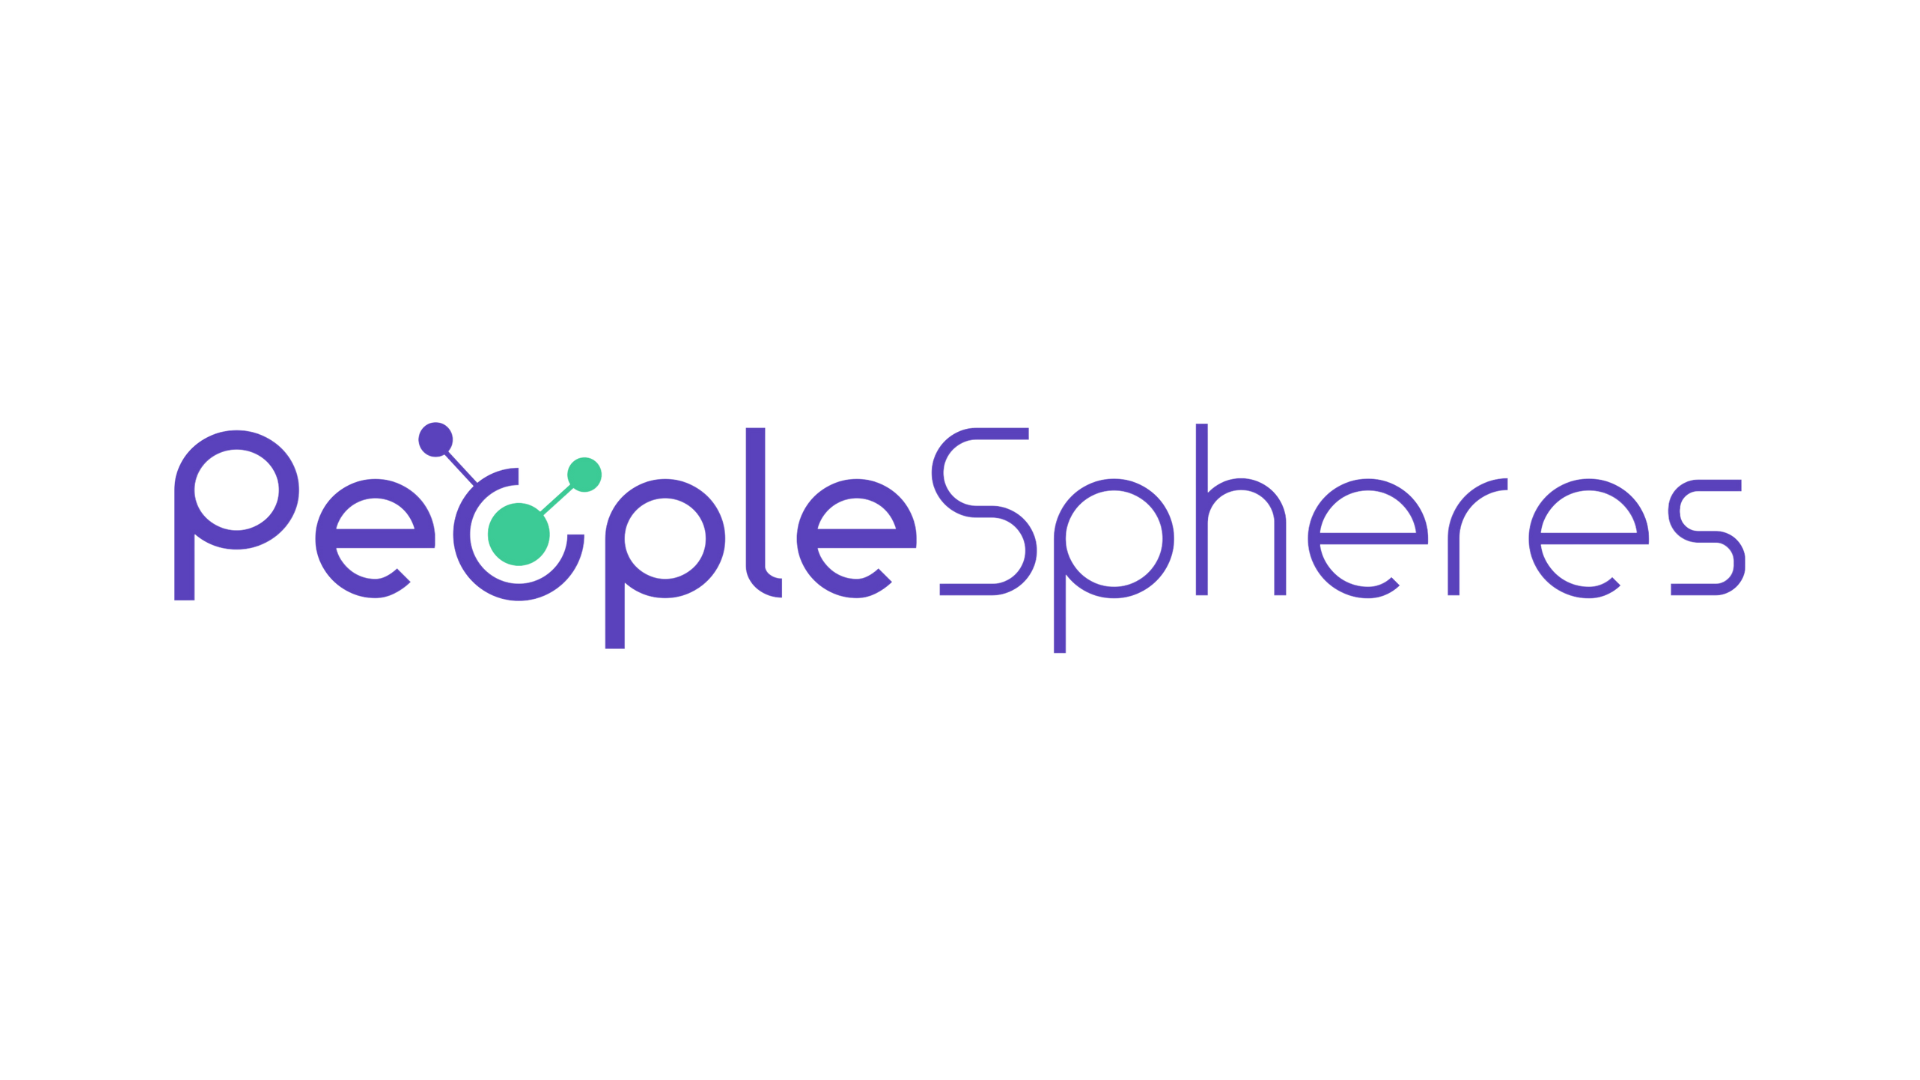 PeopleSpheres